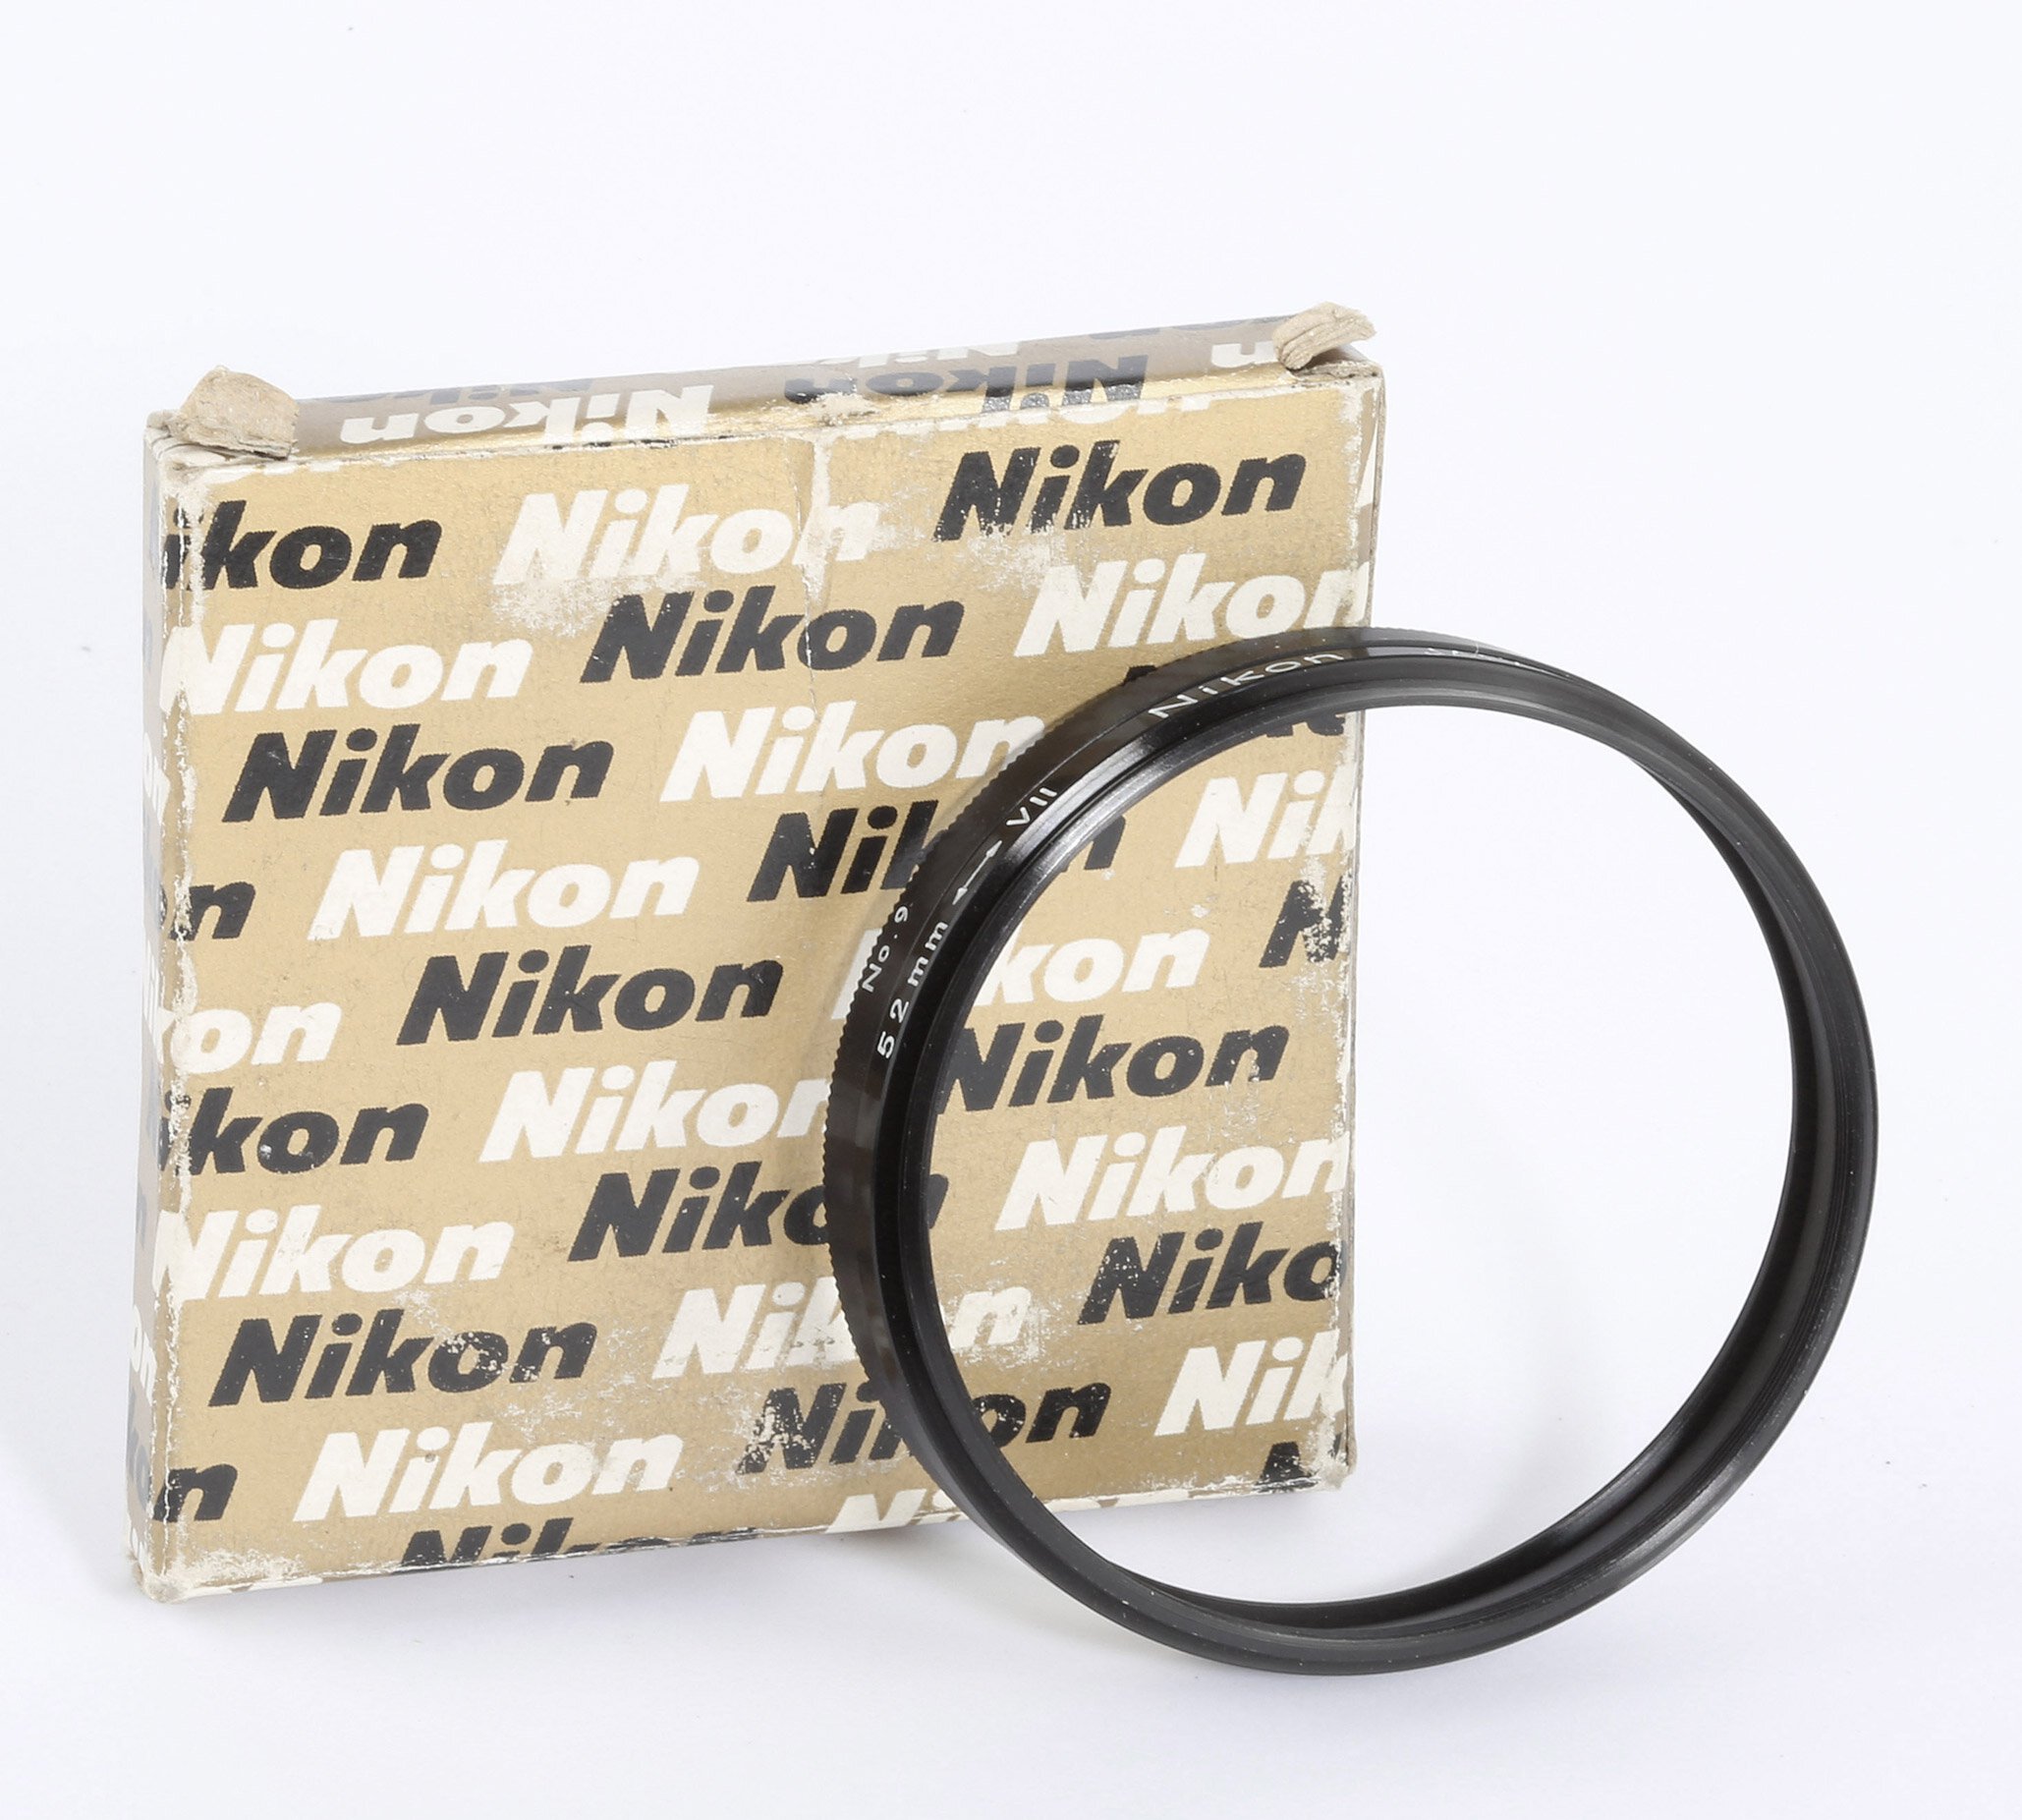 Nikon SeriesVII to 52mm Filteradaption